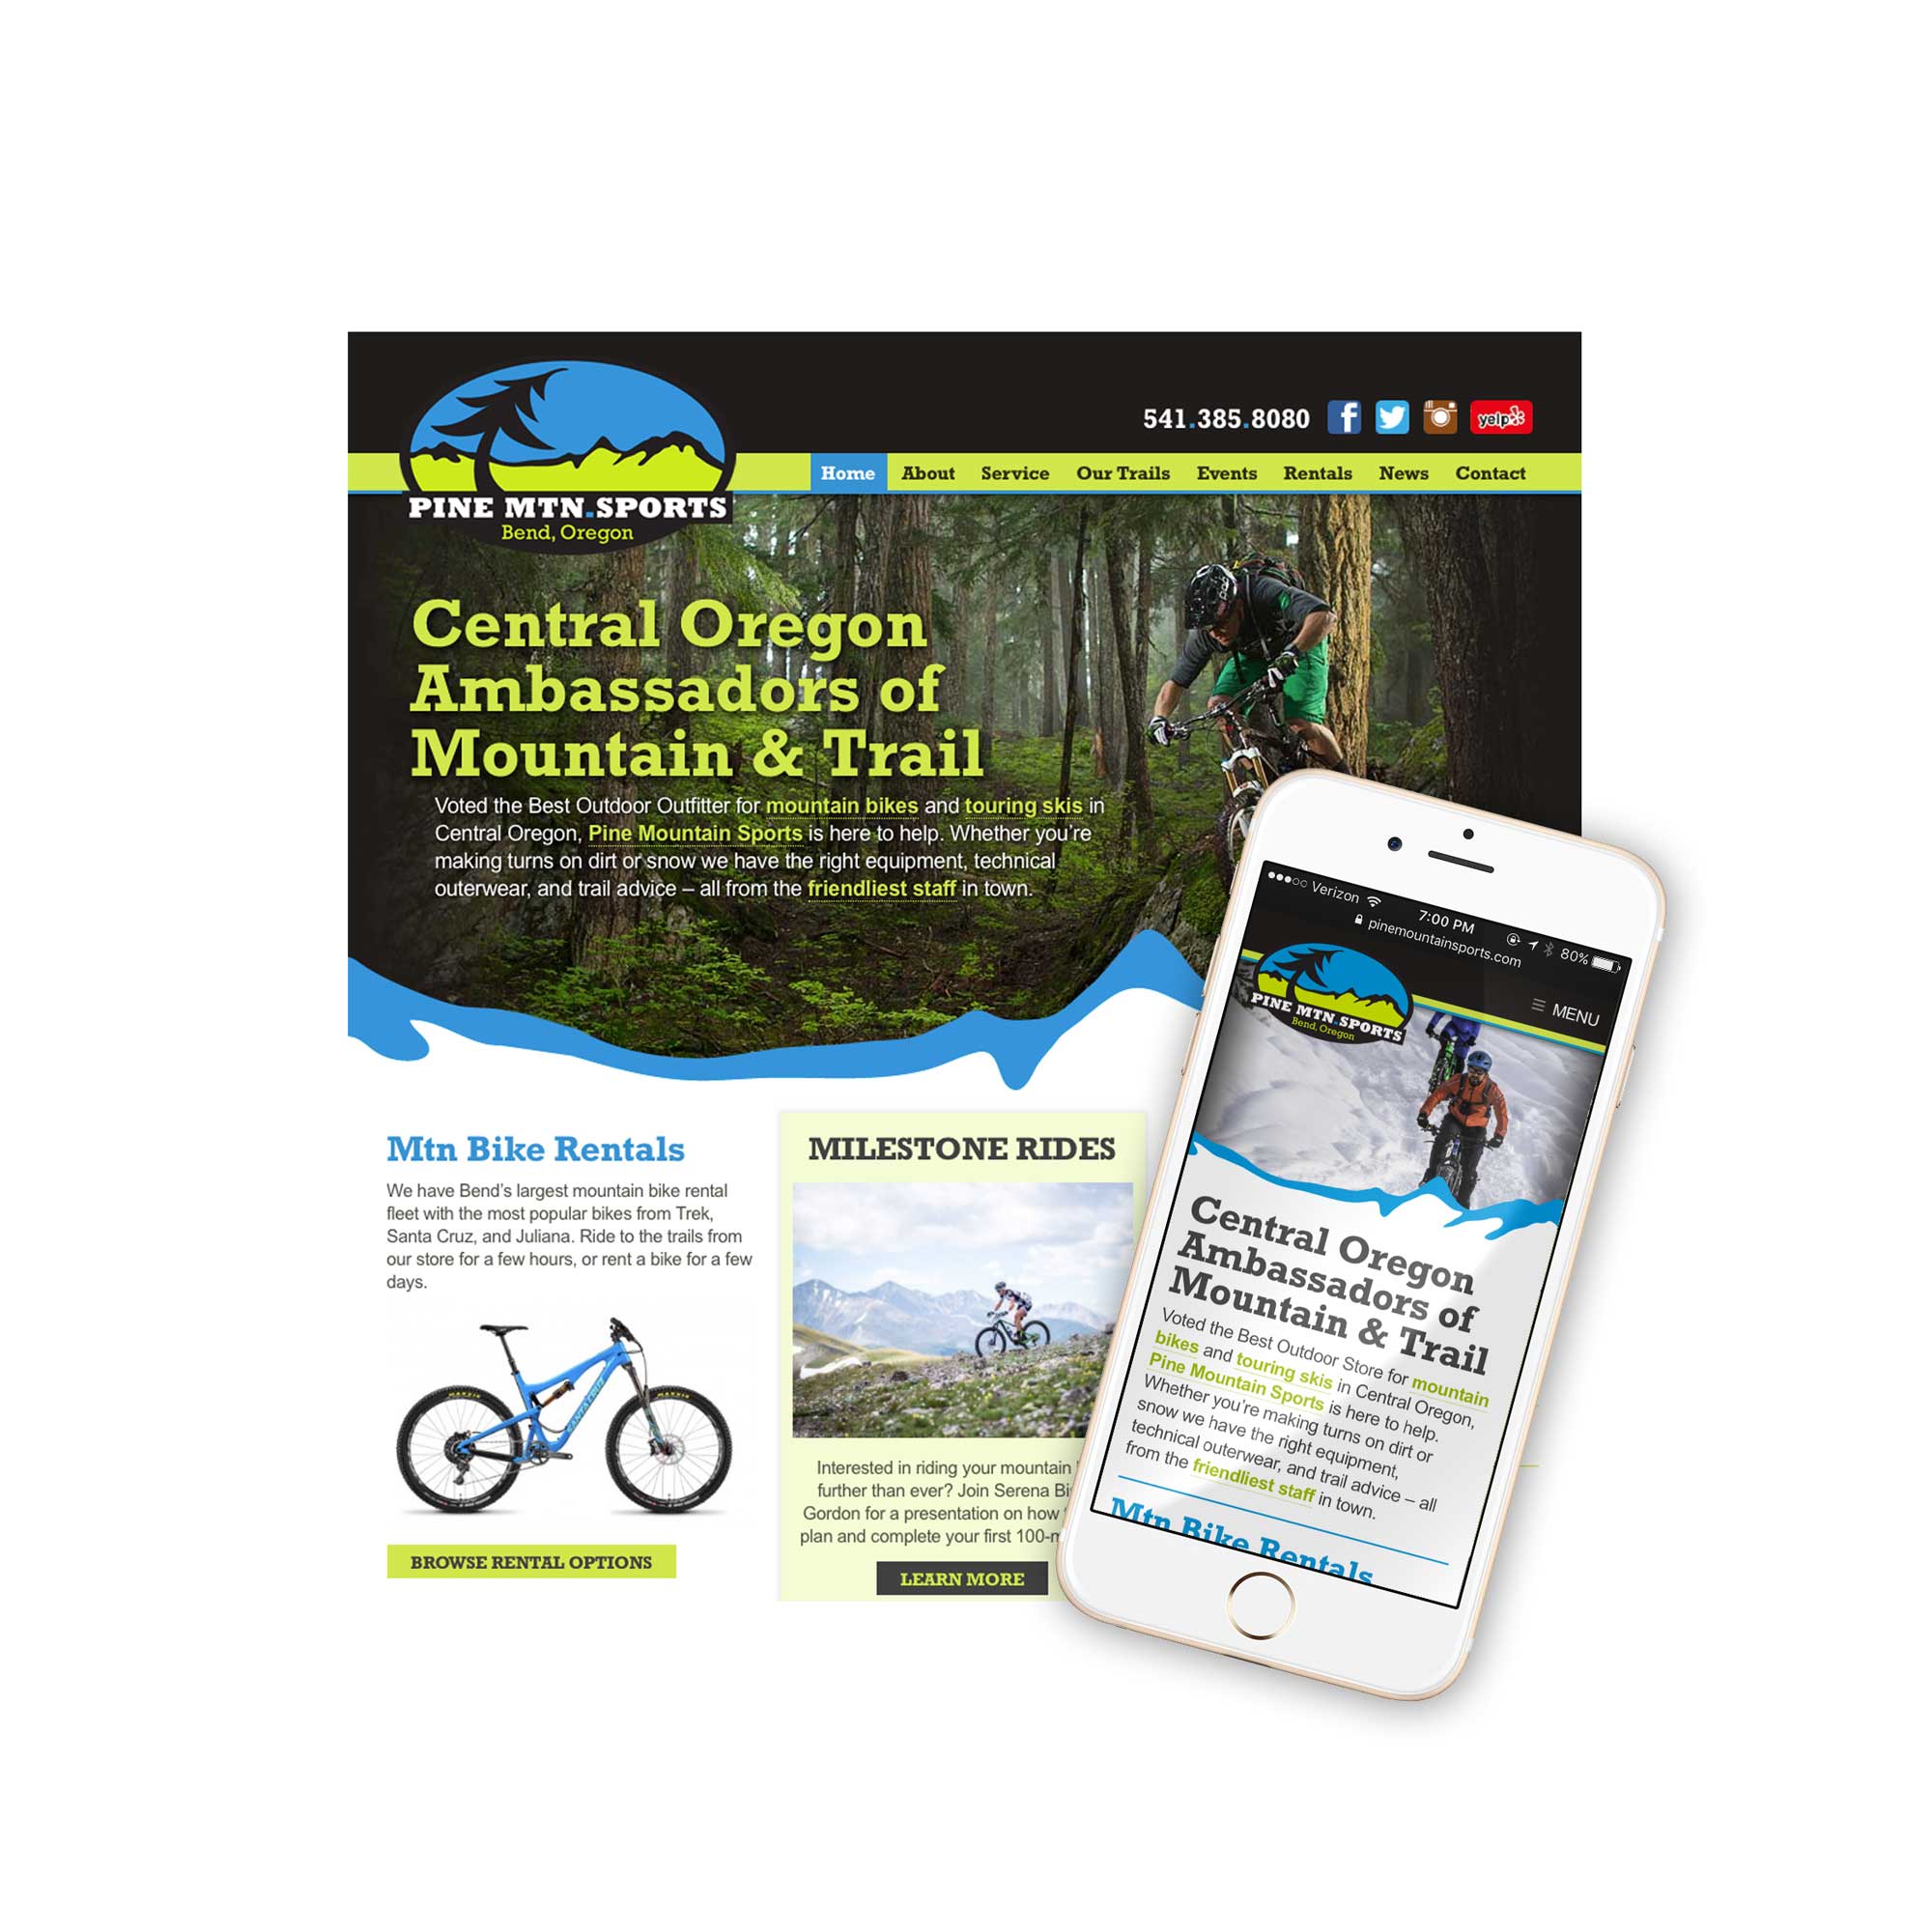 Bike Shop Website Design